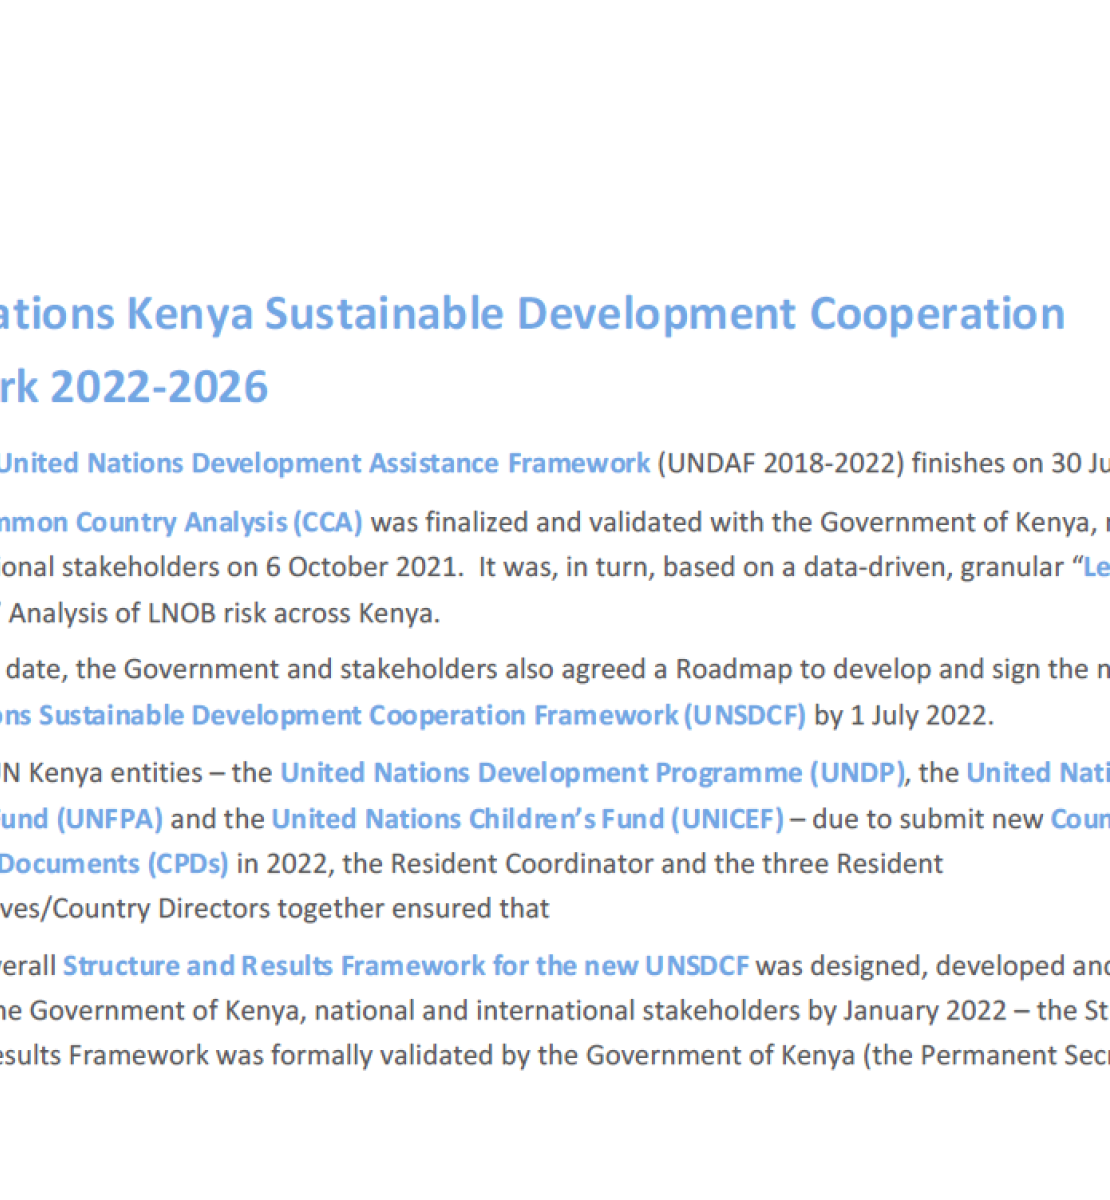 Se trata de un documento con fondo blanco y texto blanco y azul.  El logotipo del equipo de las Naciones Unidas en Kenya aparece en la parte superior izquierda.